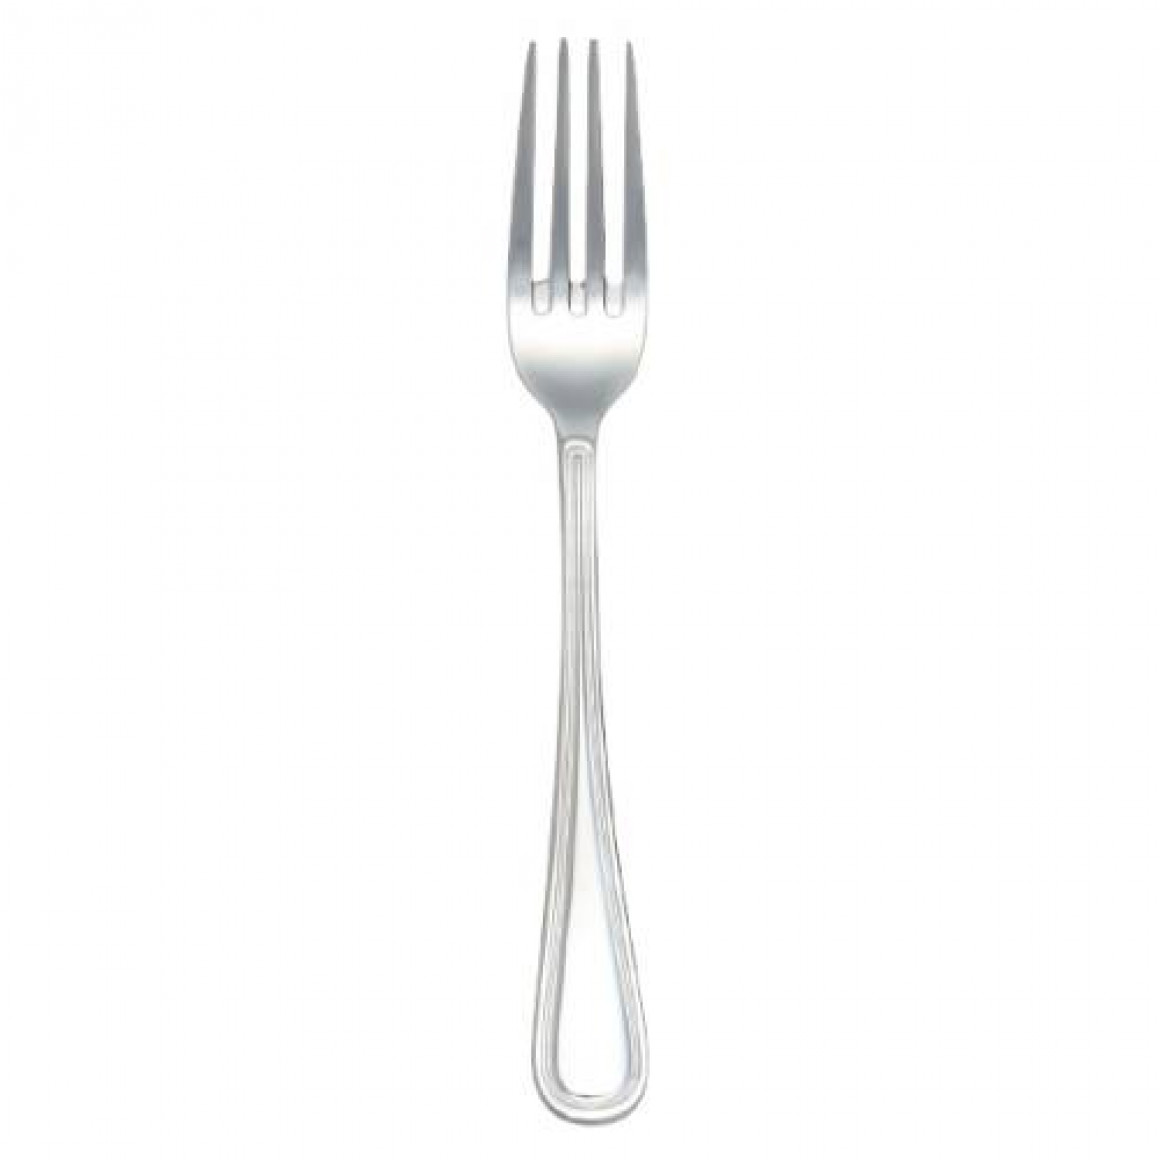 WINDSOR Table fork